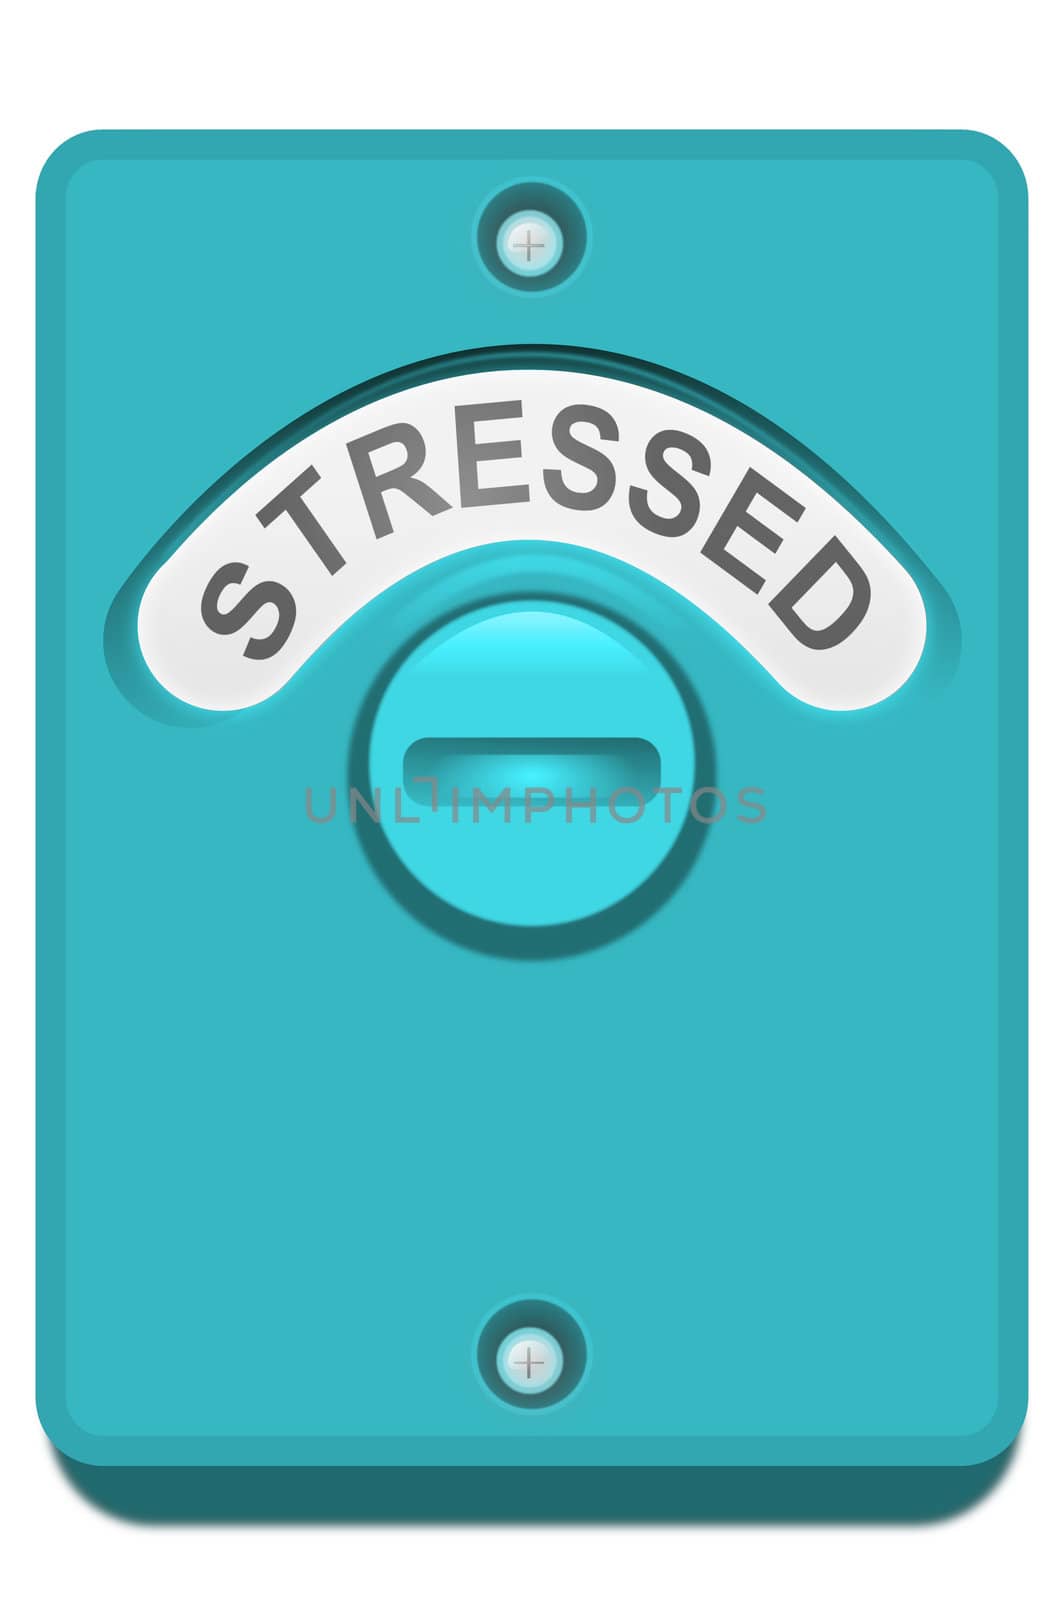 Locked in stress. by 72soul